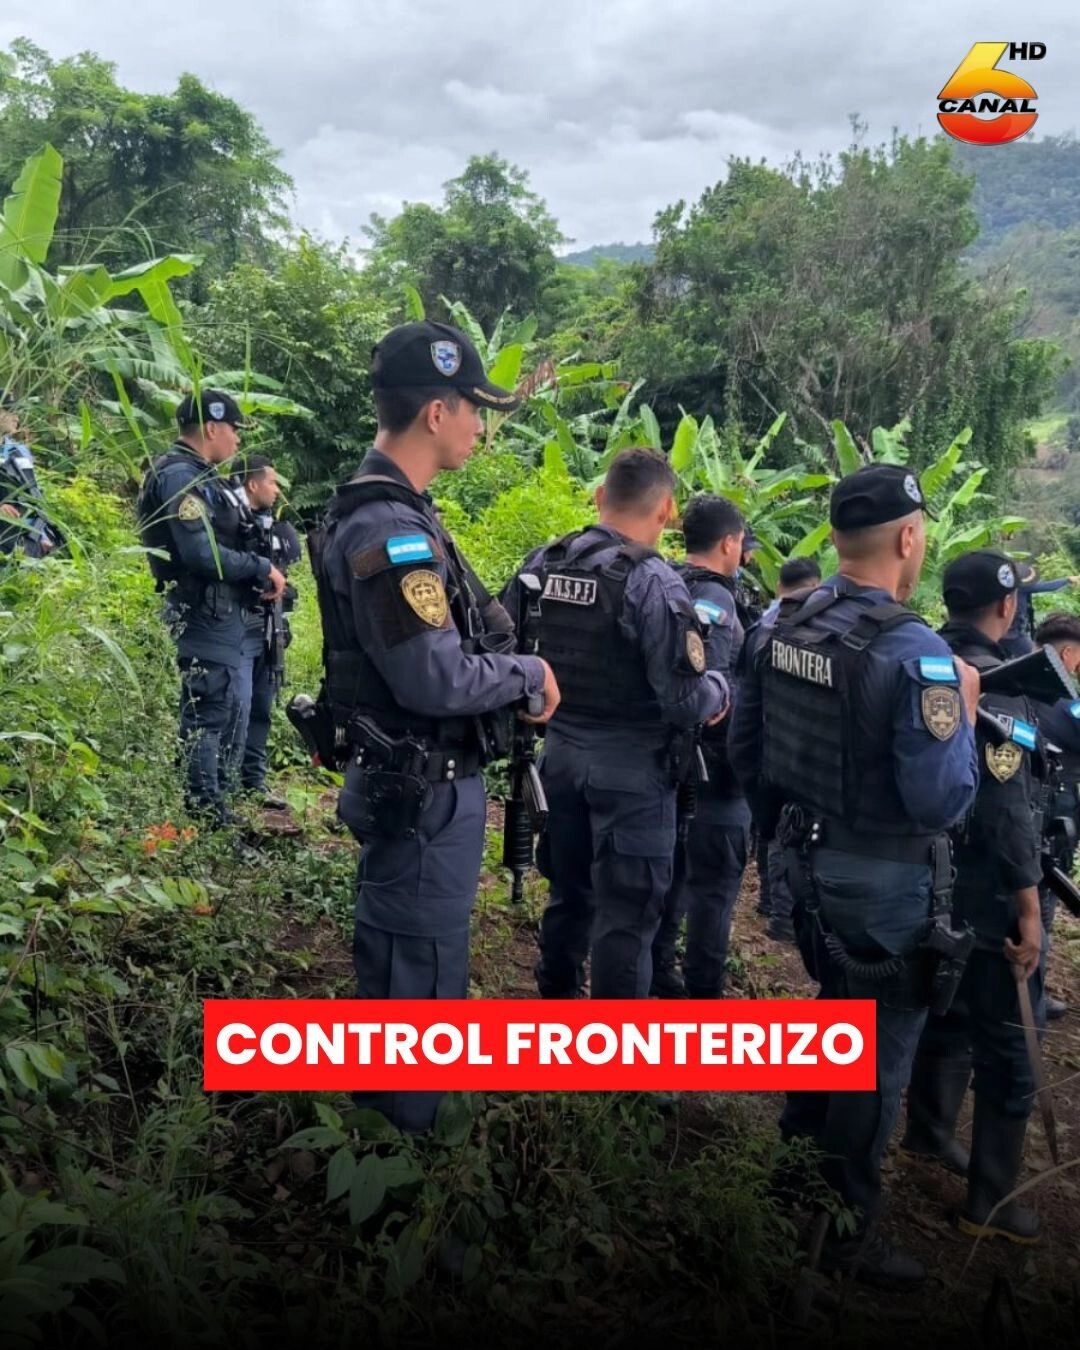 En Santa Bárbara La Policía De Fronteras Realiza Operaciones Policiales En Sectores Fronterizos Entre Honduras Y Guatemala